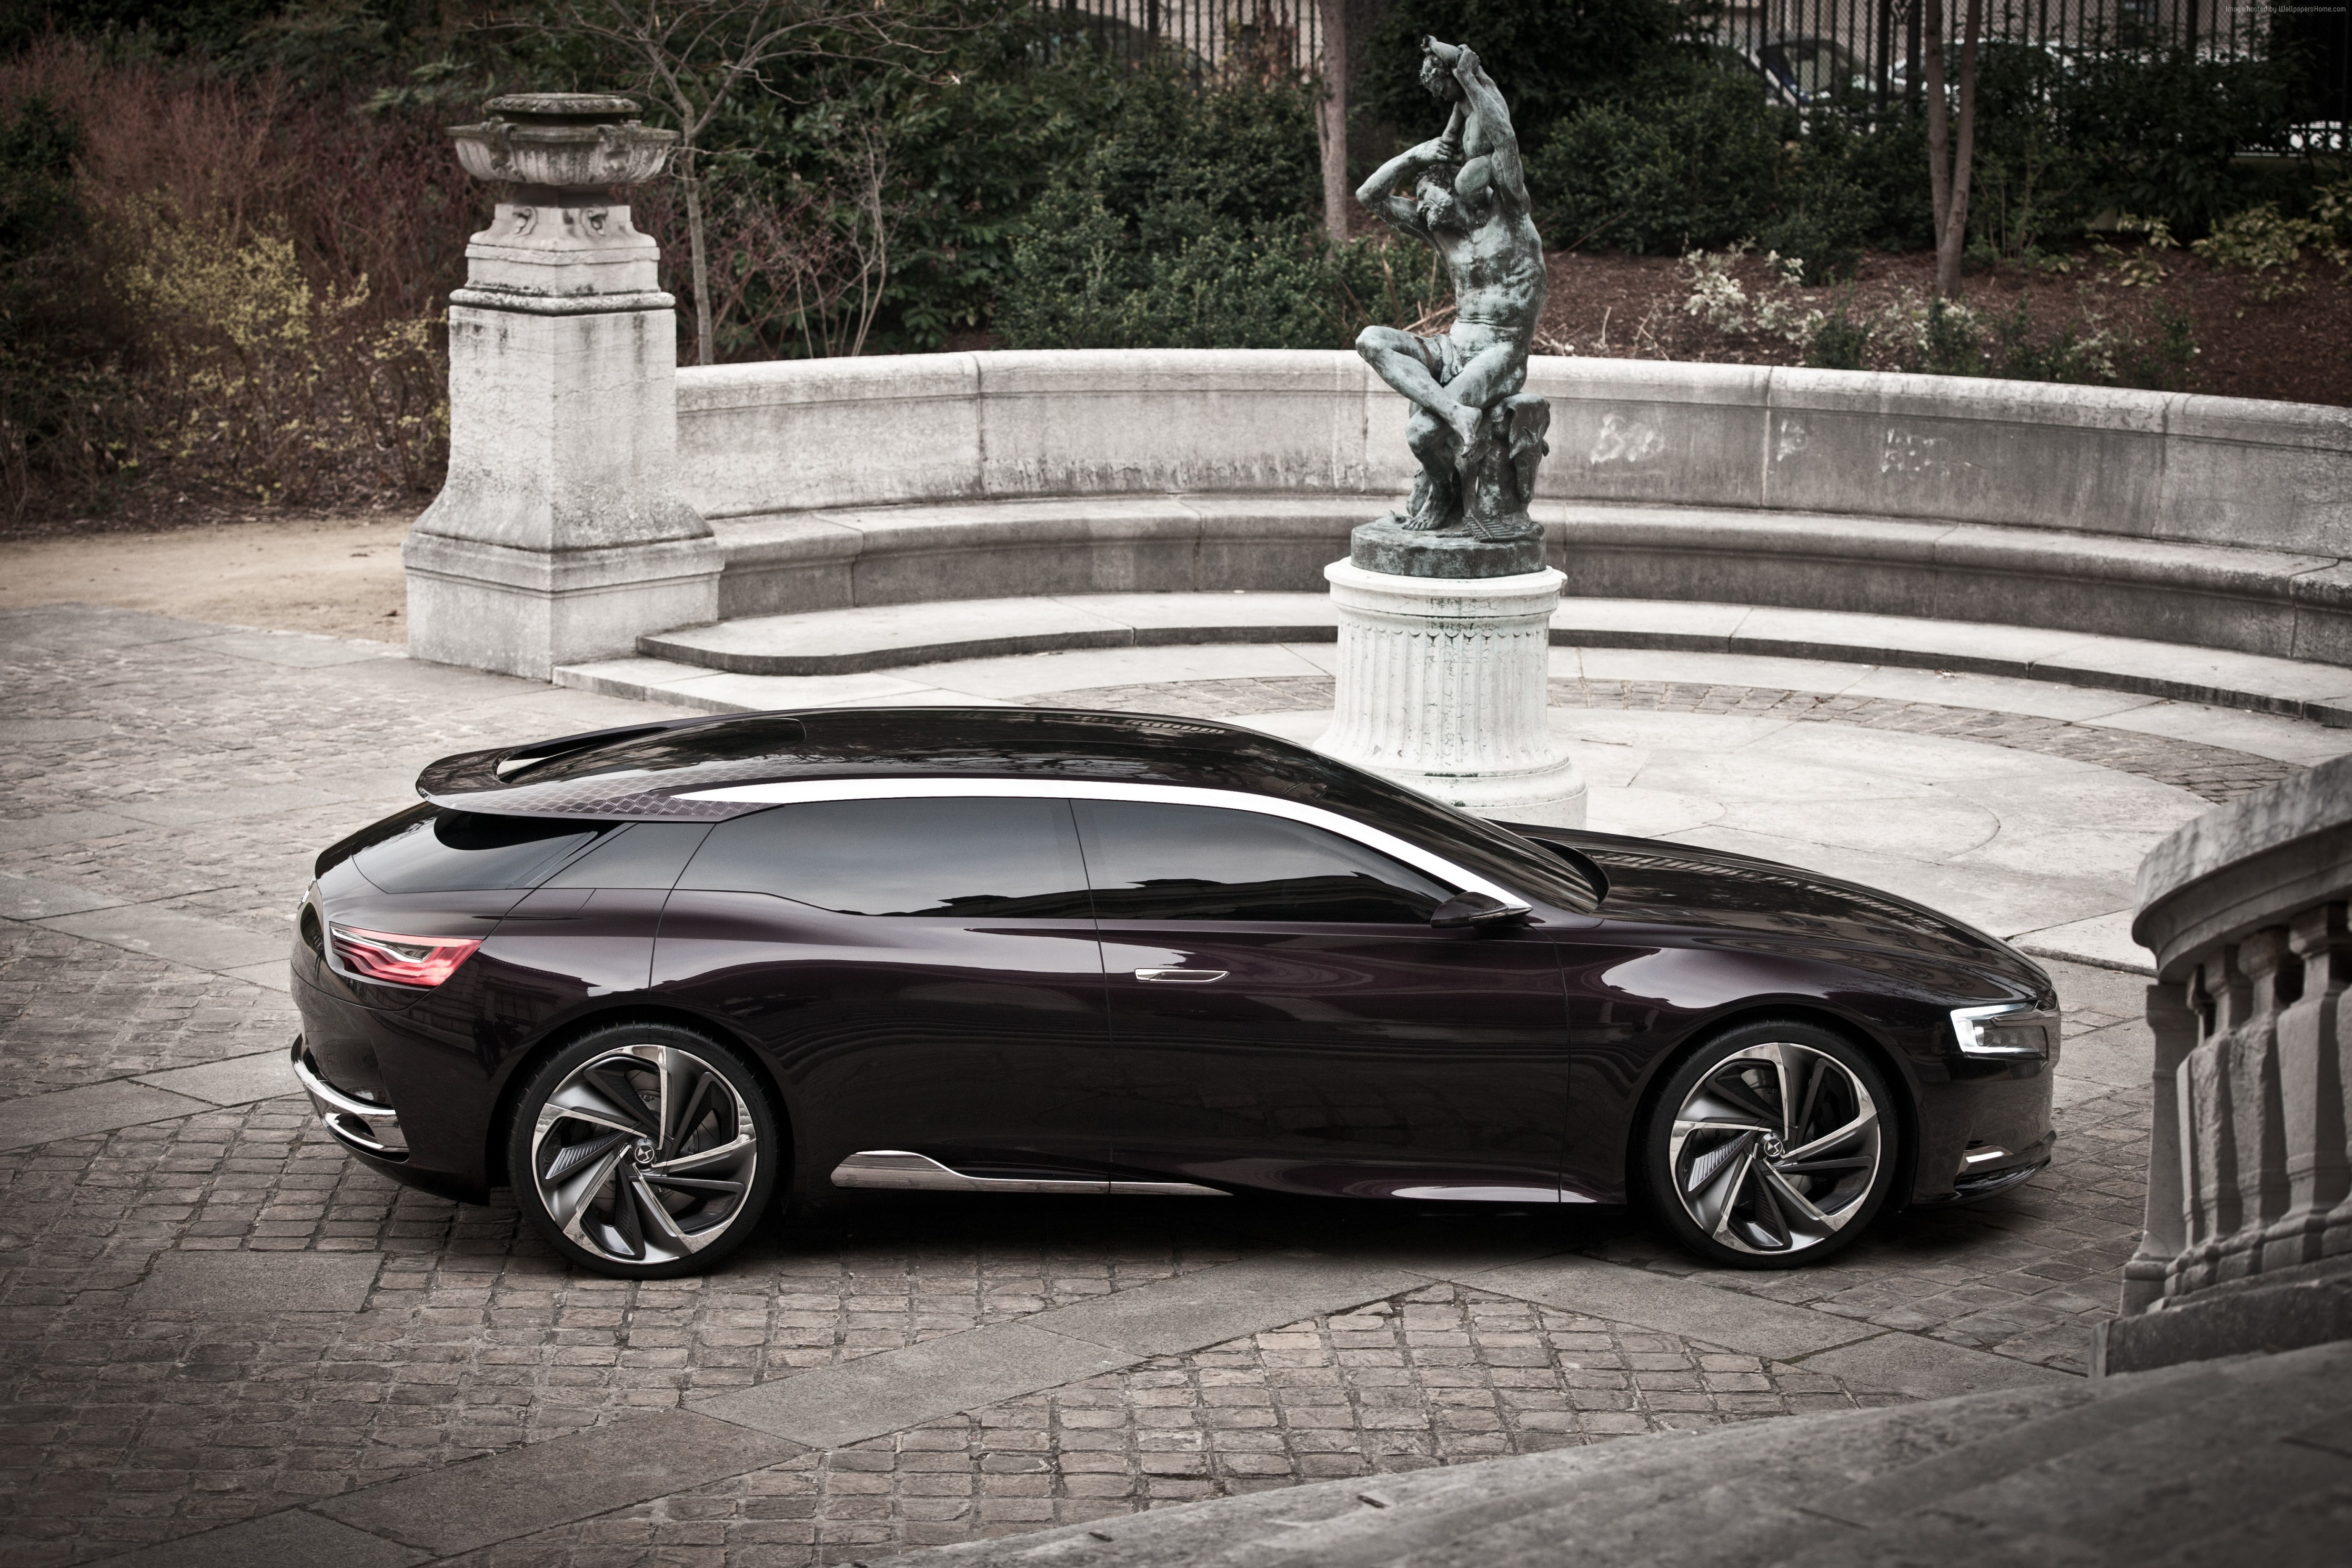 luxury cars, 2015 car, concept, Citroen DS9, supercar, Metropolis